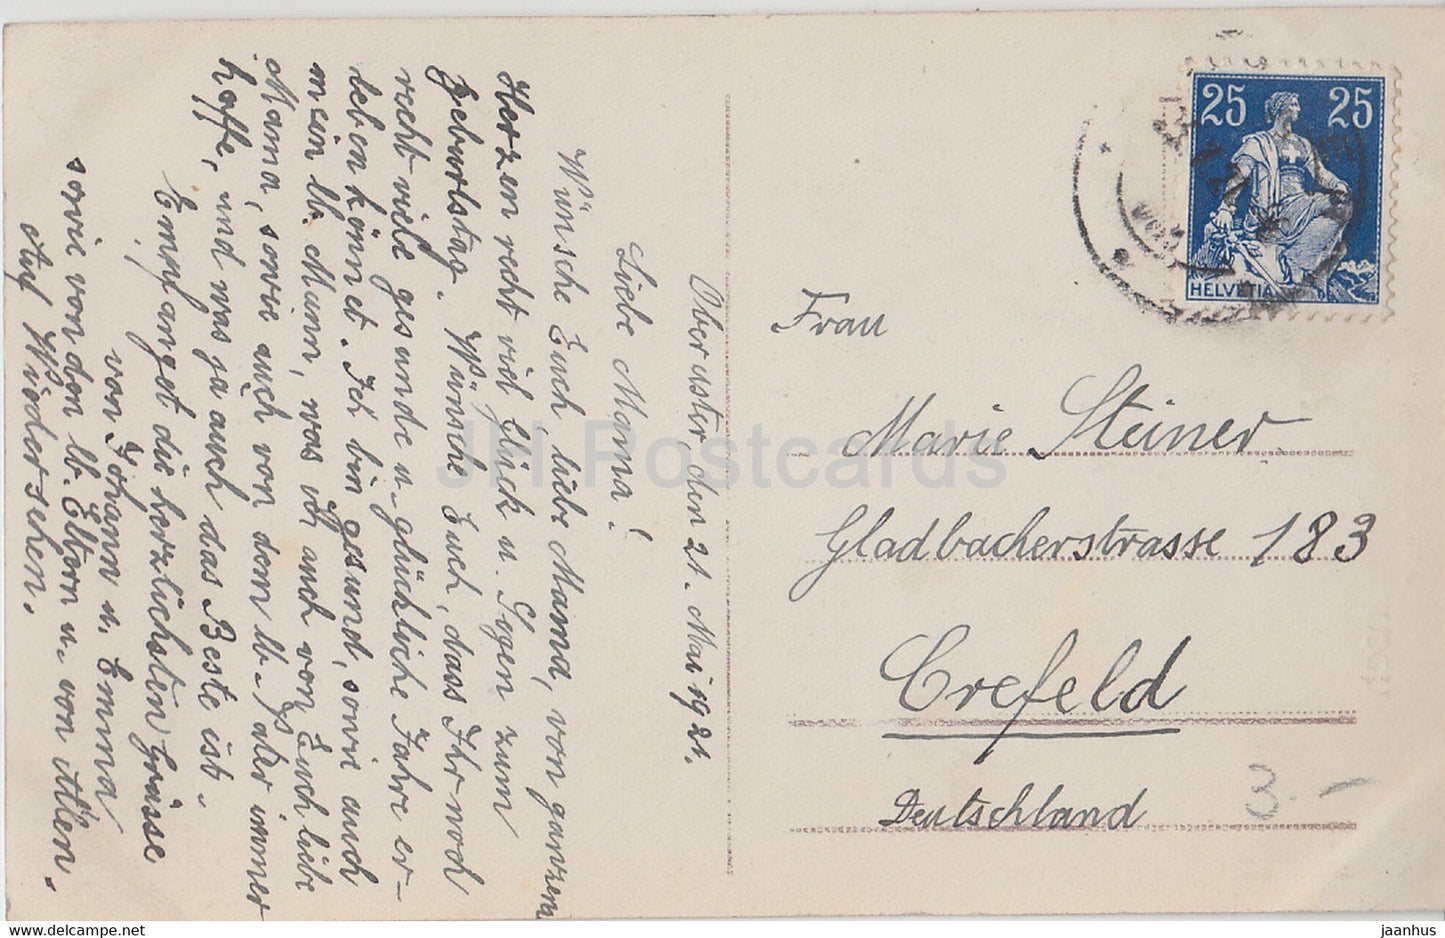 Carte de vœux d'anniversaire - Herzlichen Gluckwunsch zum Geburtstage - garçon - HB 8275/6 - carte postale ancienne - 1921 - Allemagne - utilisé